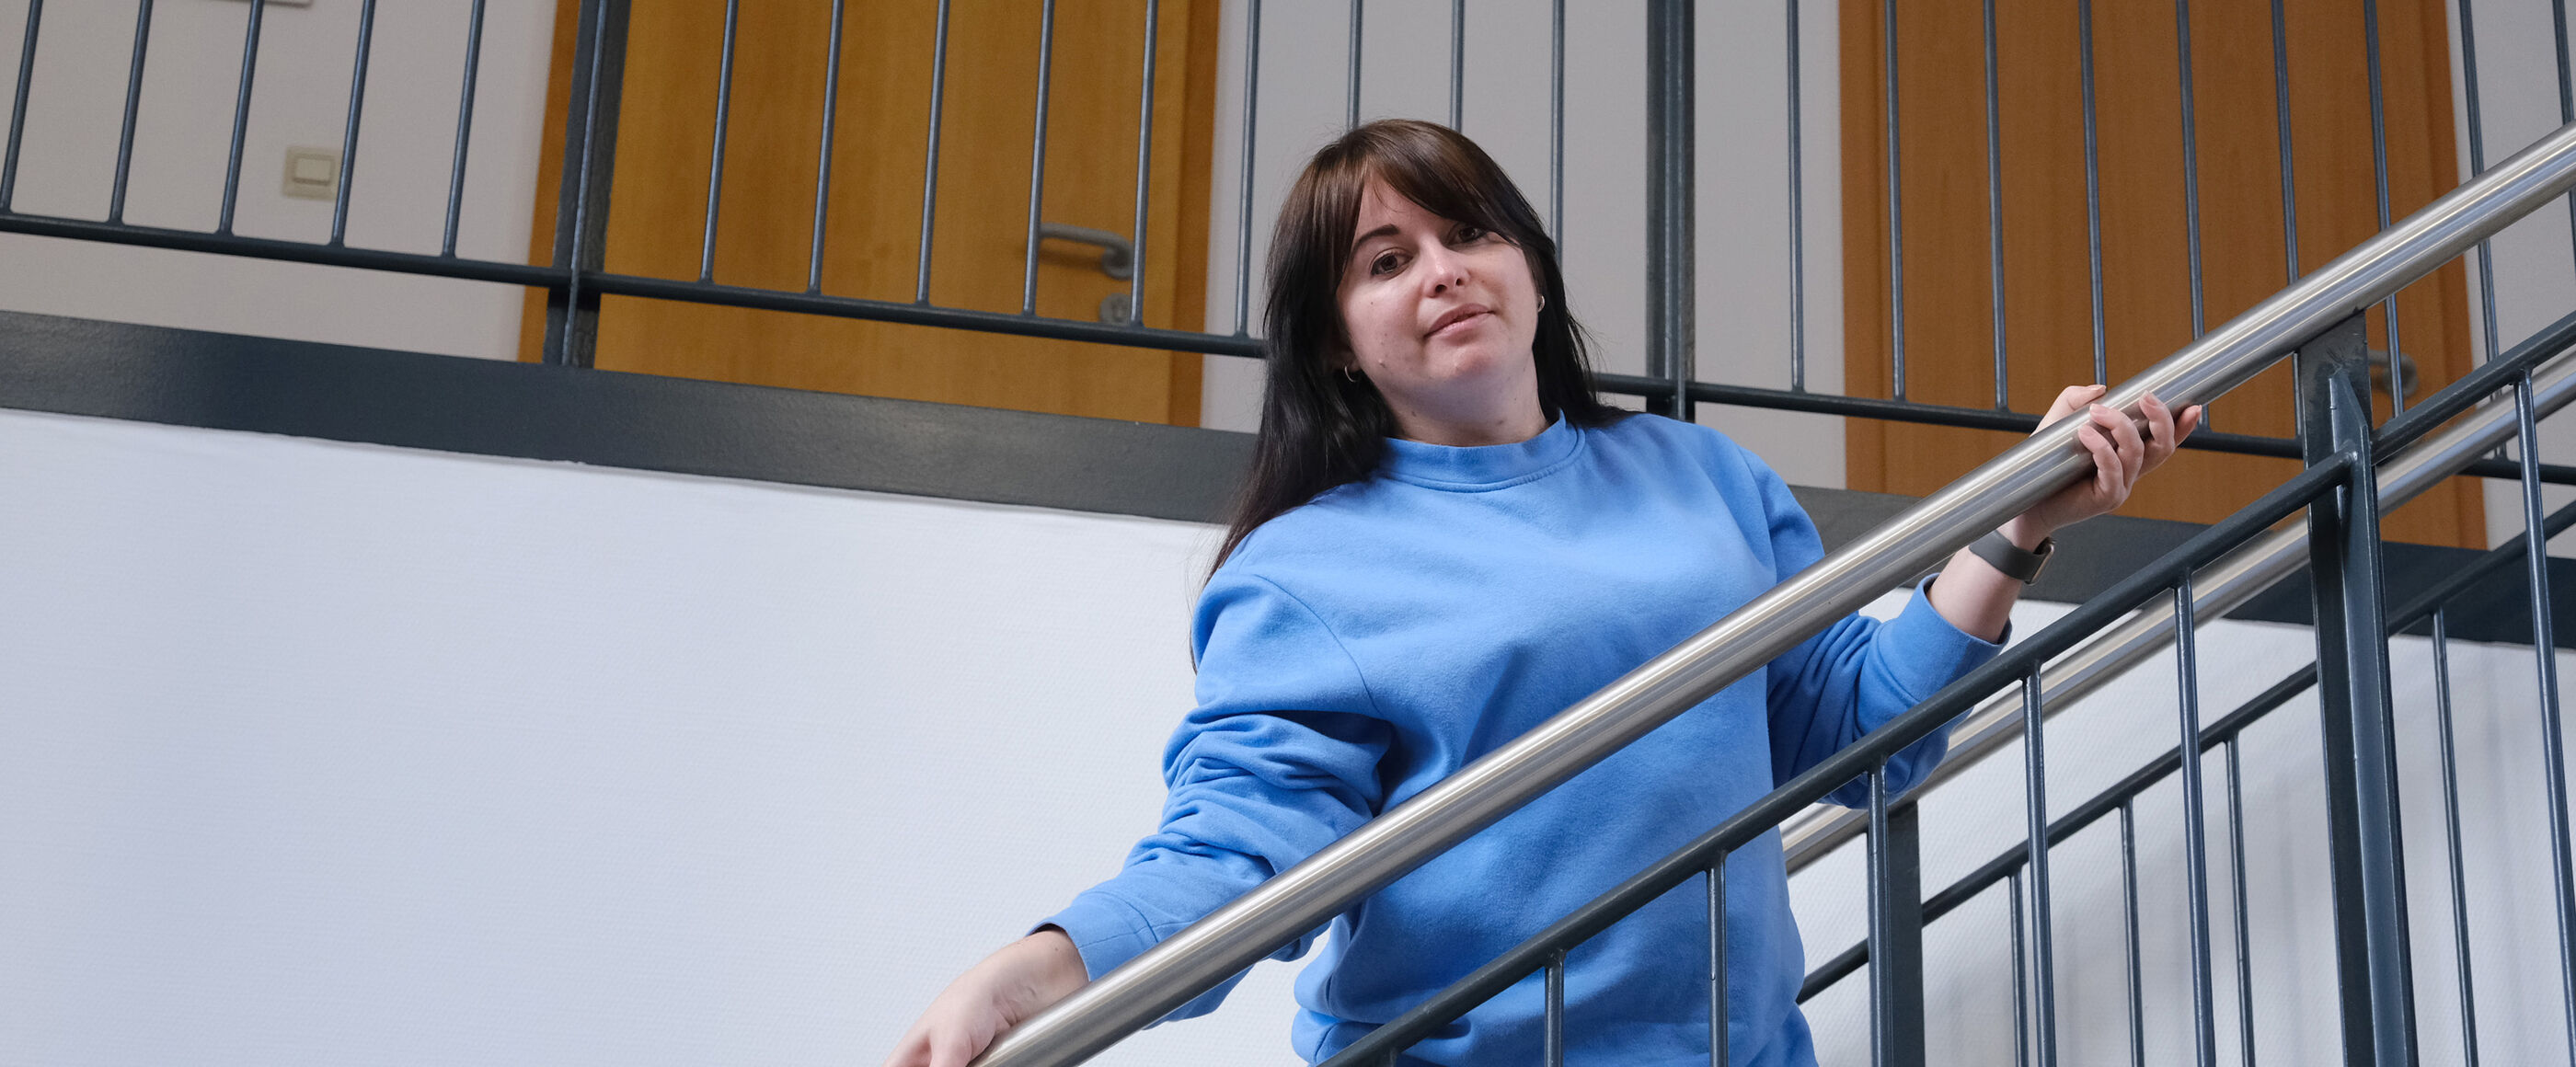 Eine als Frau lesbare Person mit dunklen Haaren und einem blauen Pullover steht an einem Treppengeländer.